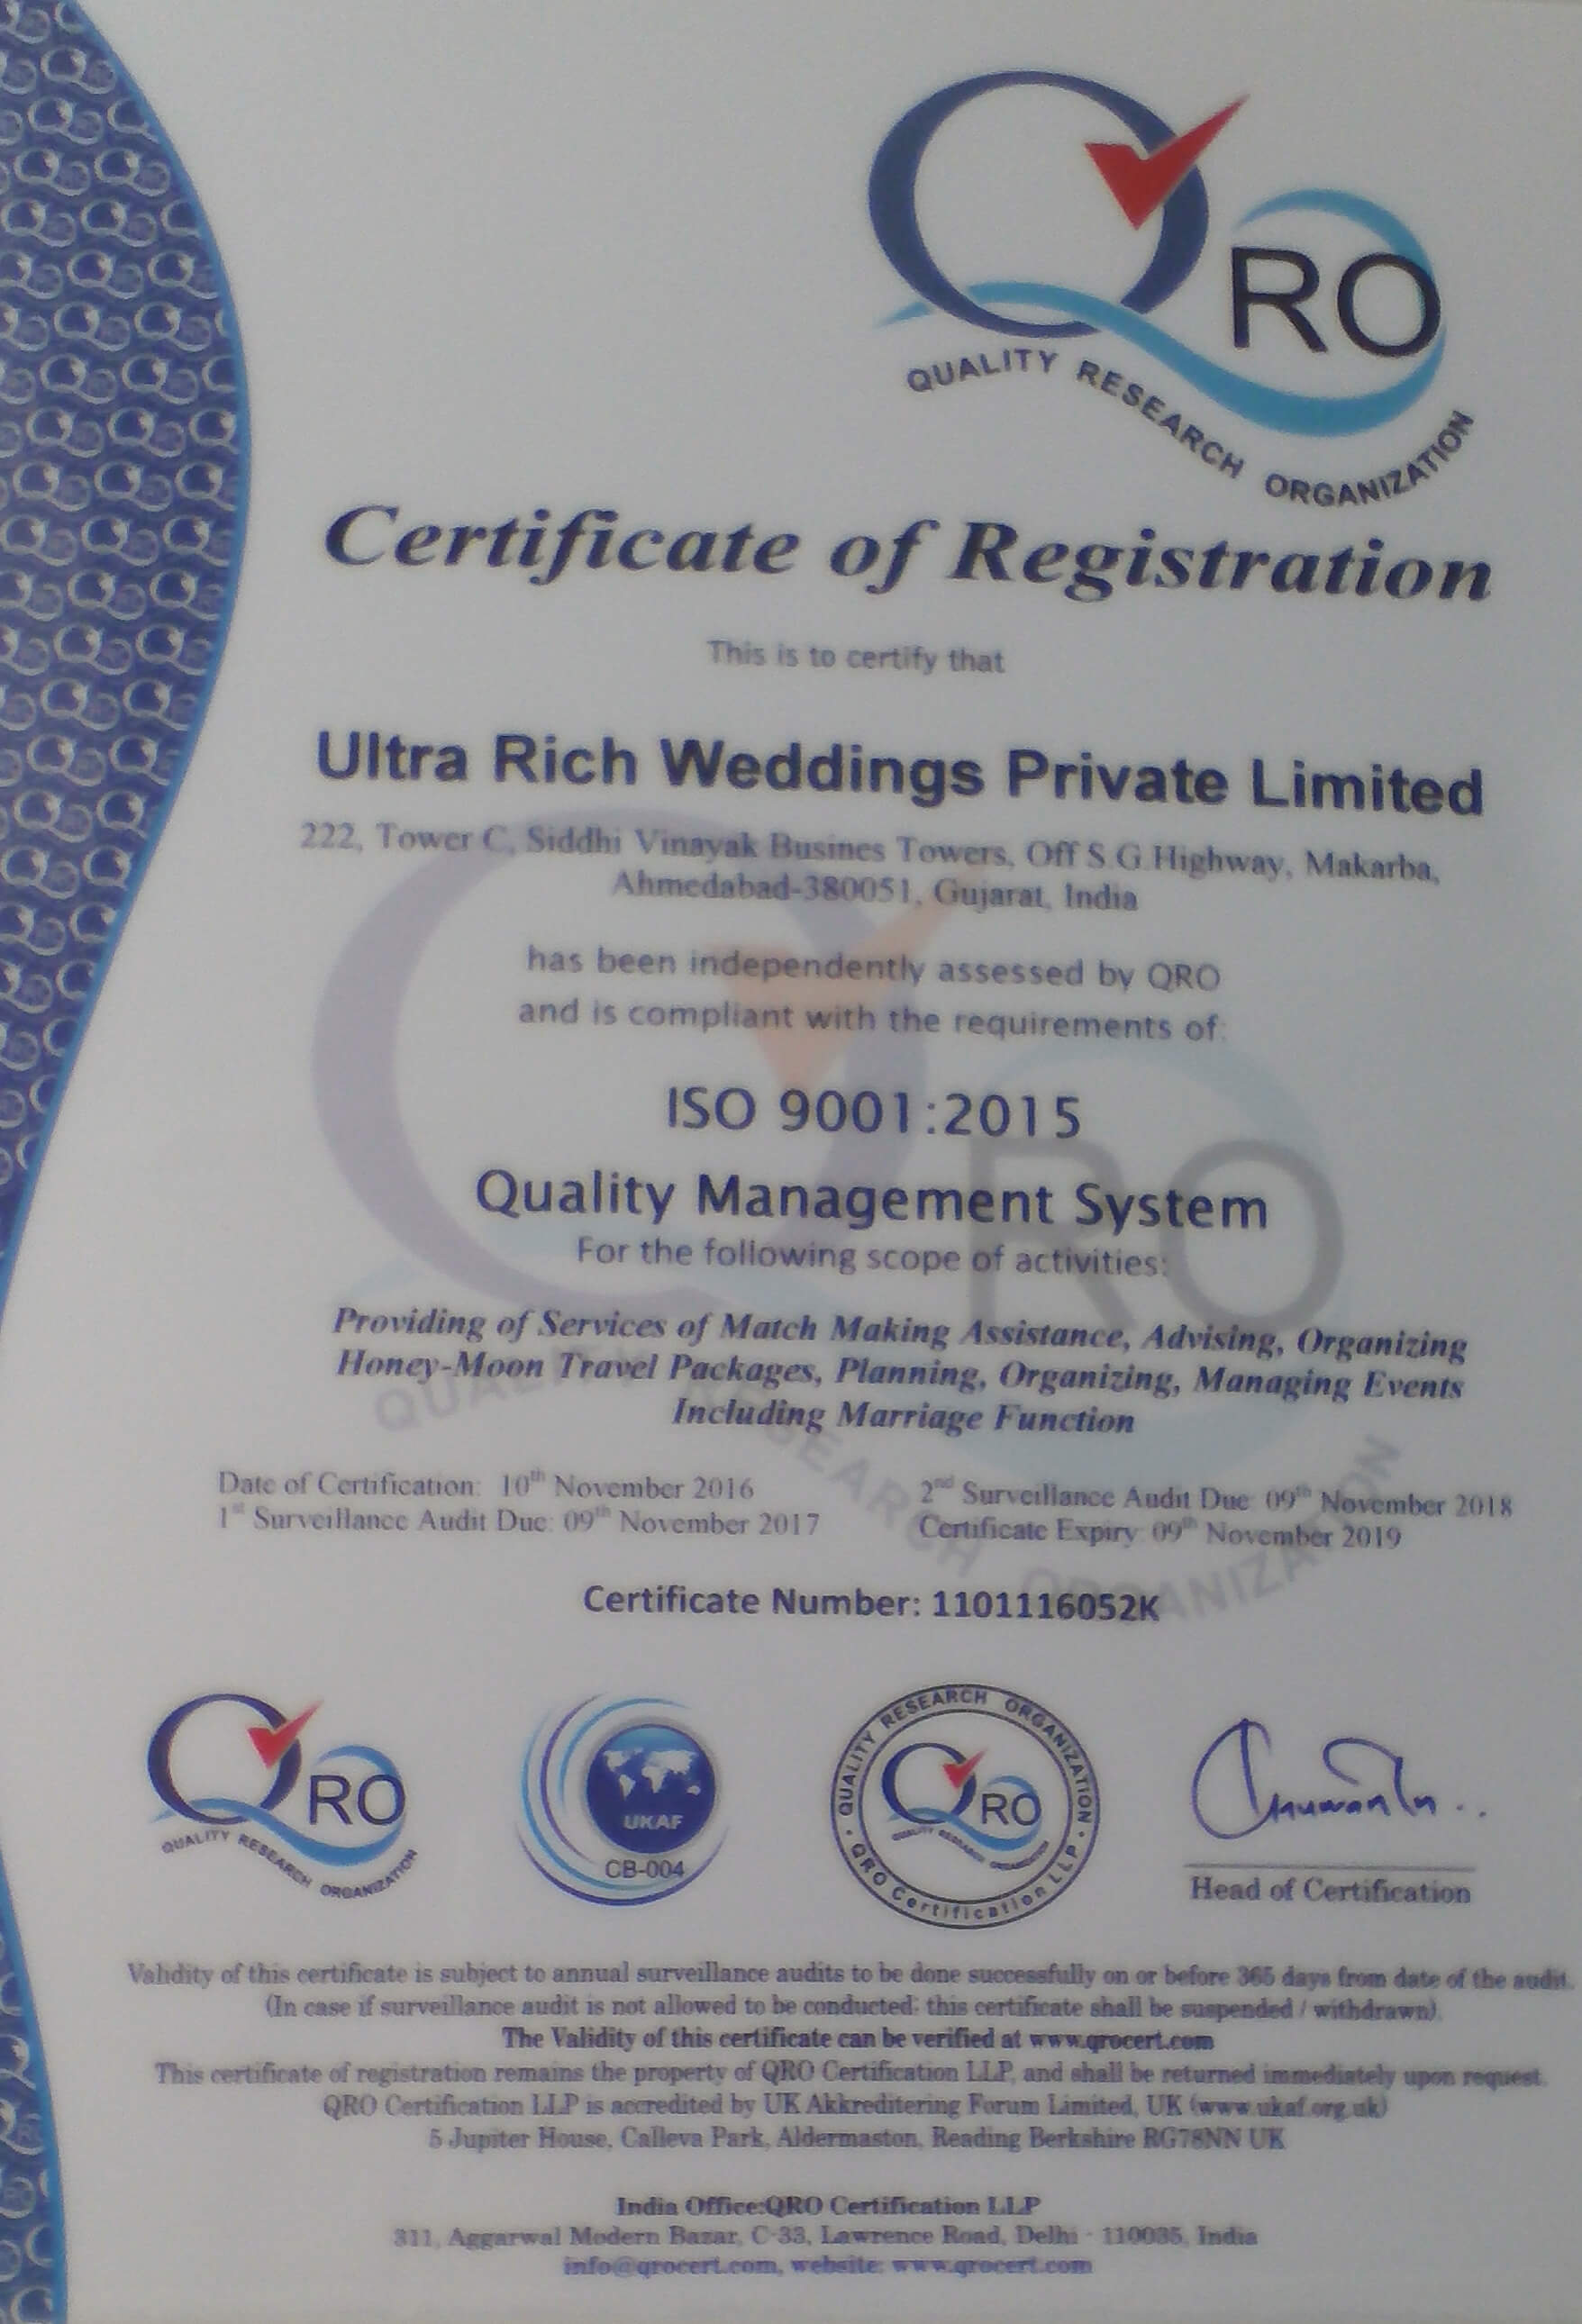 Ultra Rich Weddings Pvt. Ltd. an ISO 9001: 2008 Certified Company